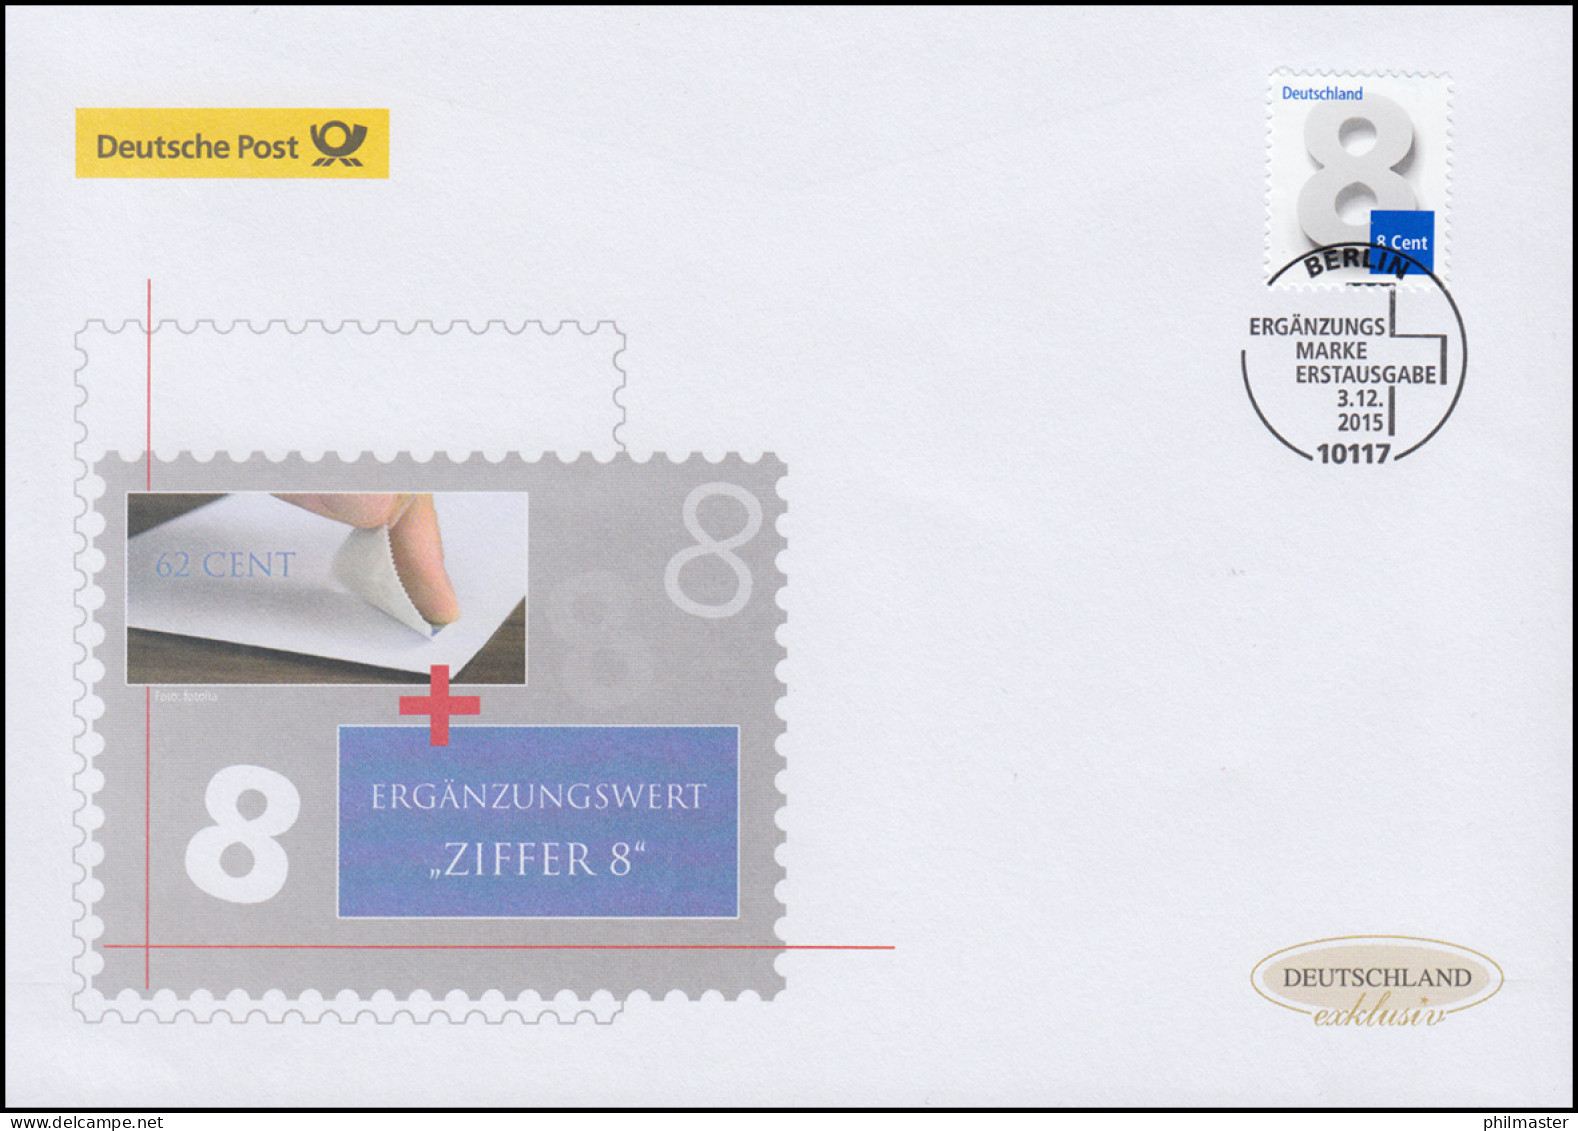 3188 Ziffernzeichnung 8 Cent, Nassklebend, Schmuck-FDC Deutschland Exklusiv - Briefe U. Dokumente